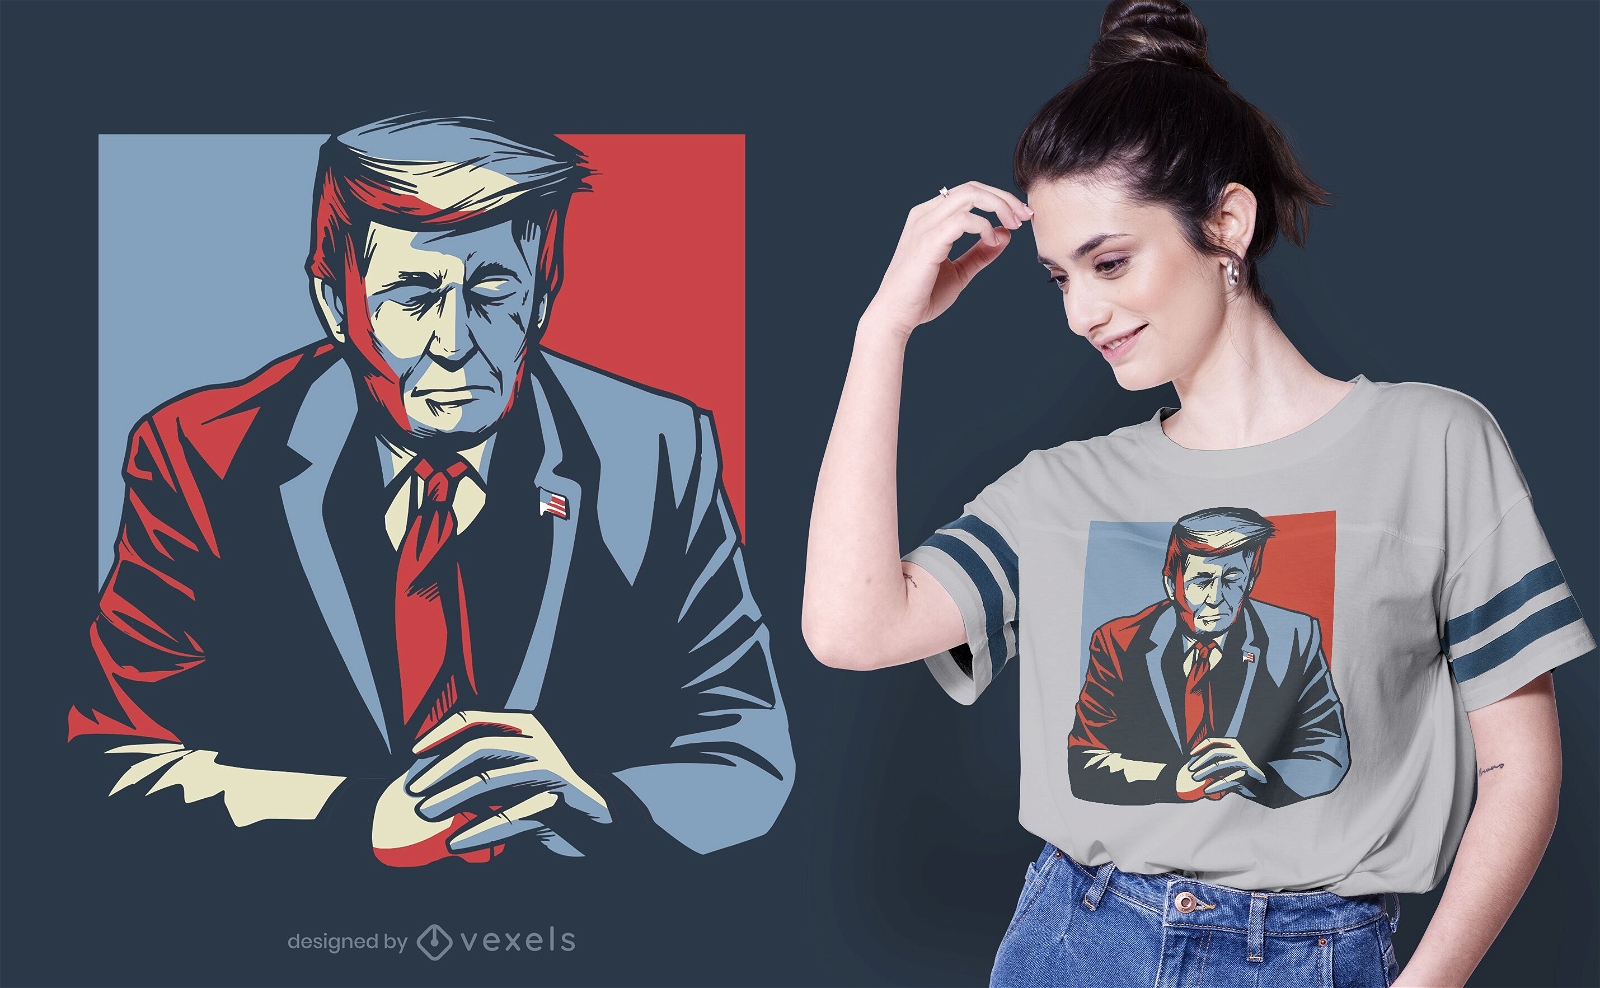 Donald Trump olhos fechados design de t-shirt